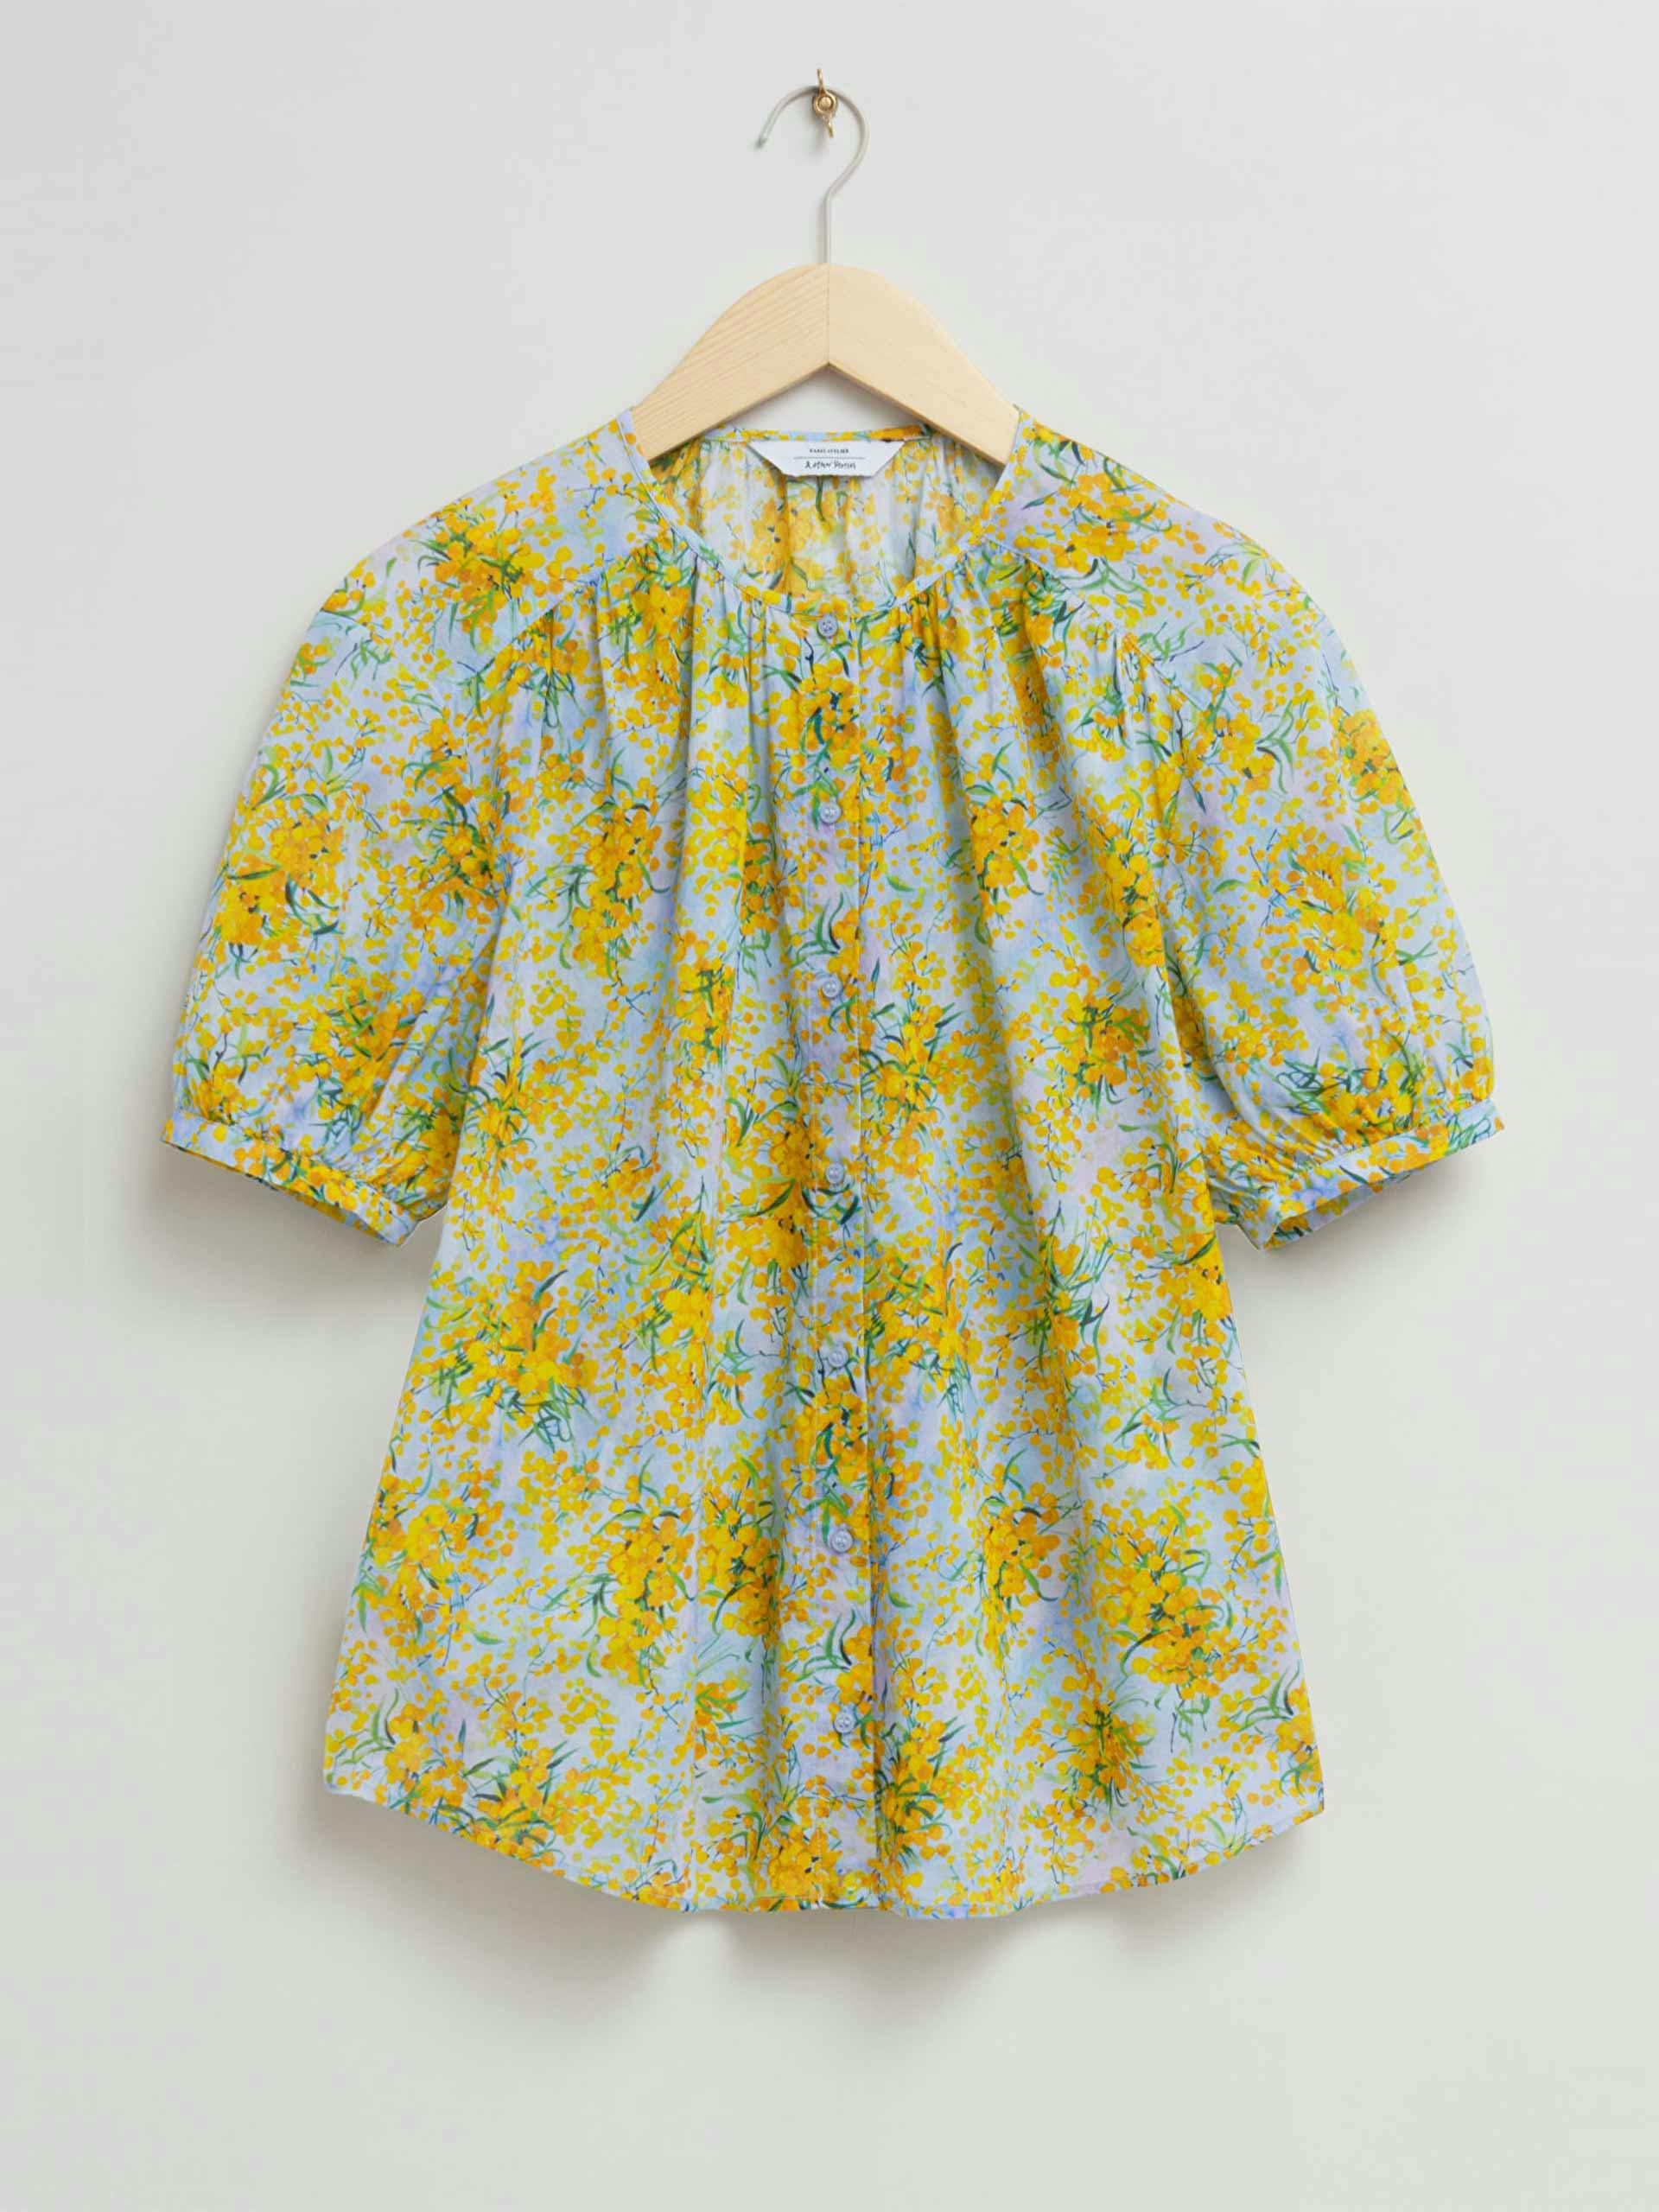 Cotton floral blouse